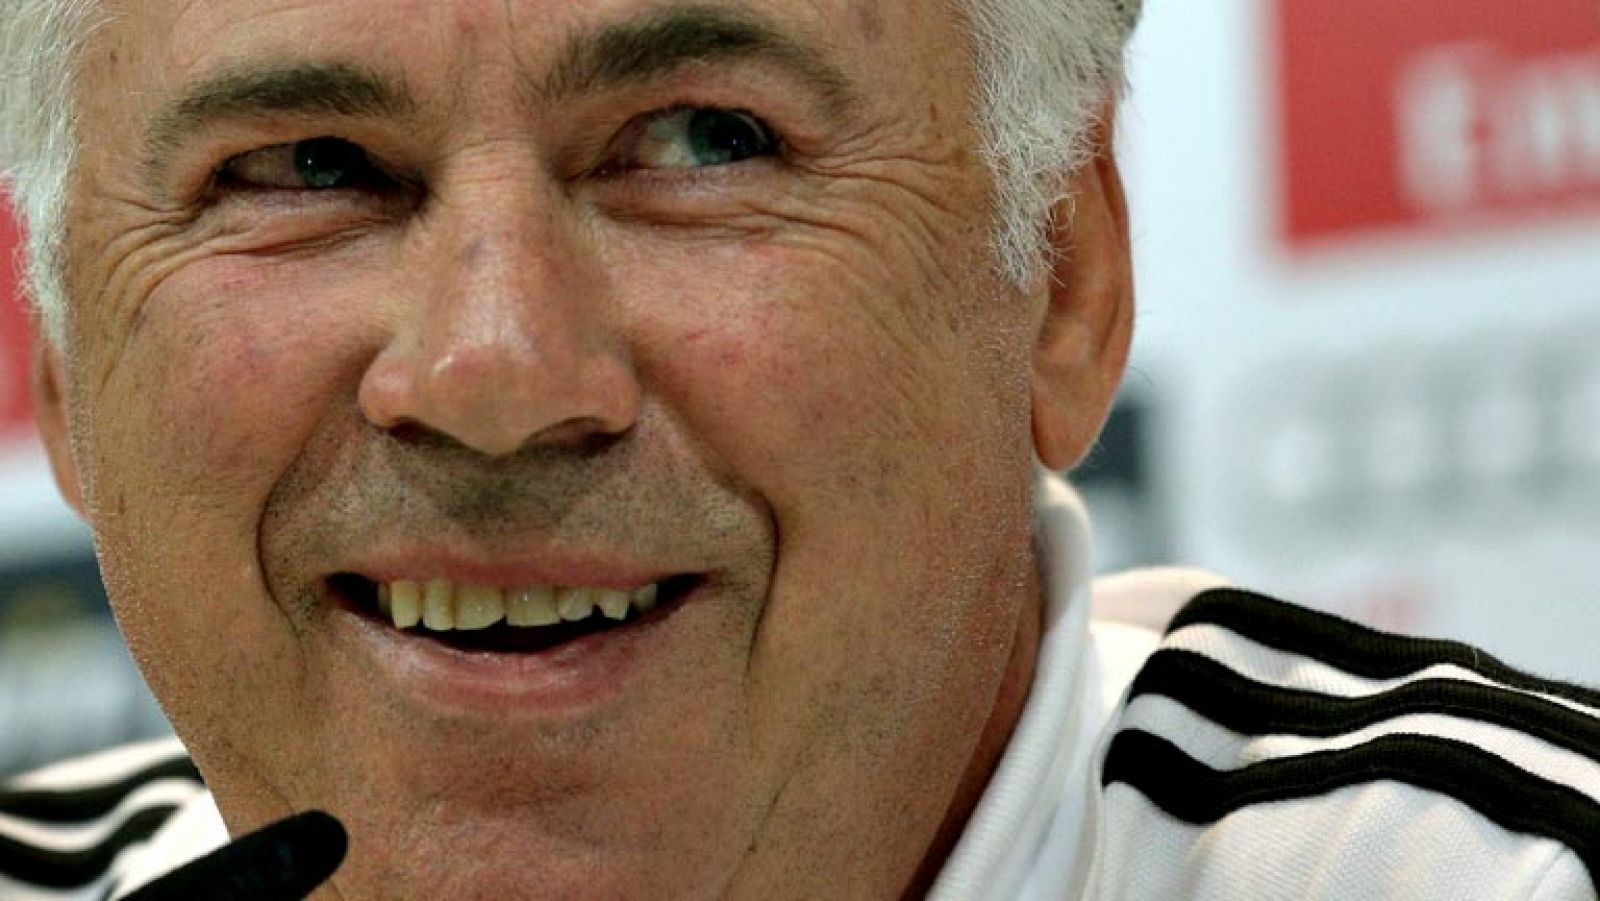 El entrenador del Real Madrid, Carlo Ancelotti, ha querido zanjar  la polémica en torno a quién debe ser el guardameta titular del  conjunto blanco declarando que "no juega Iker o Diego, juega el  portero del Real Madrid", en una llamada a la unidad 